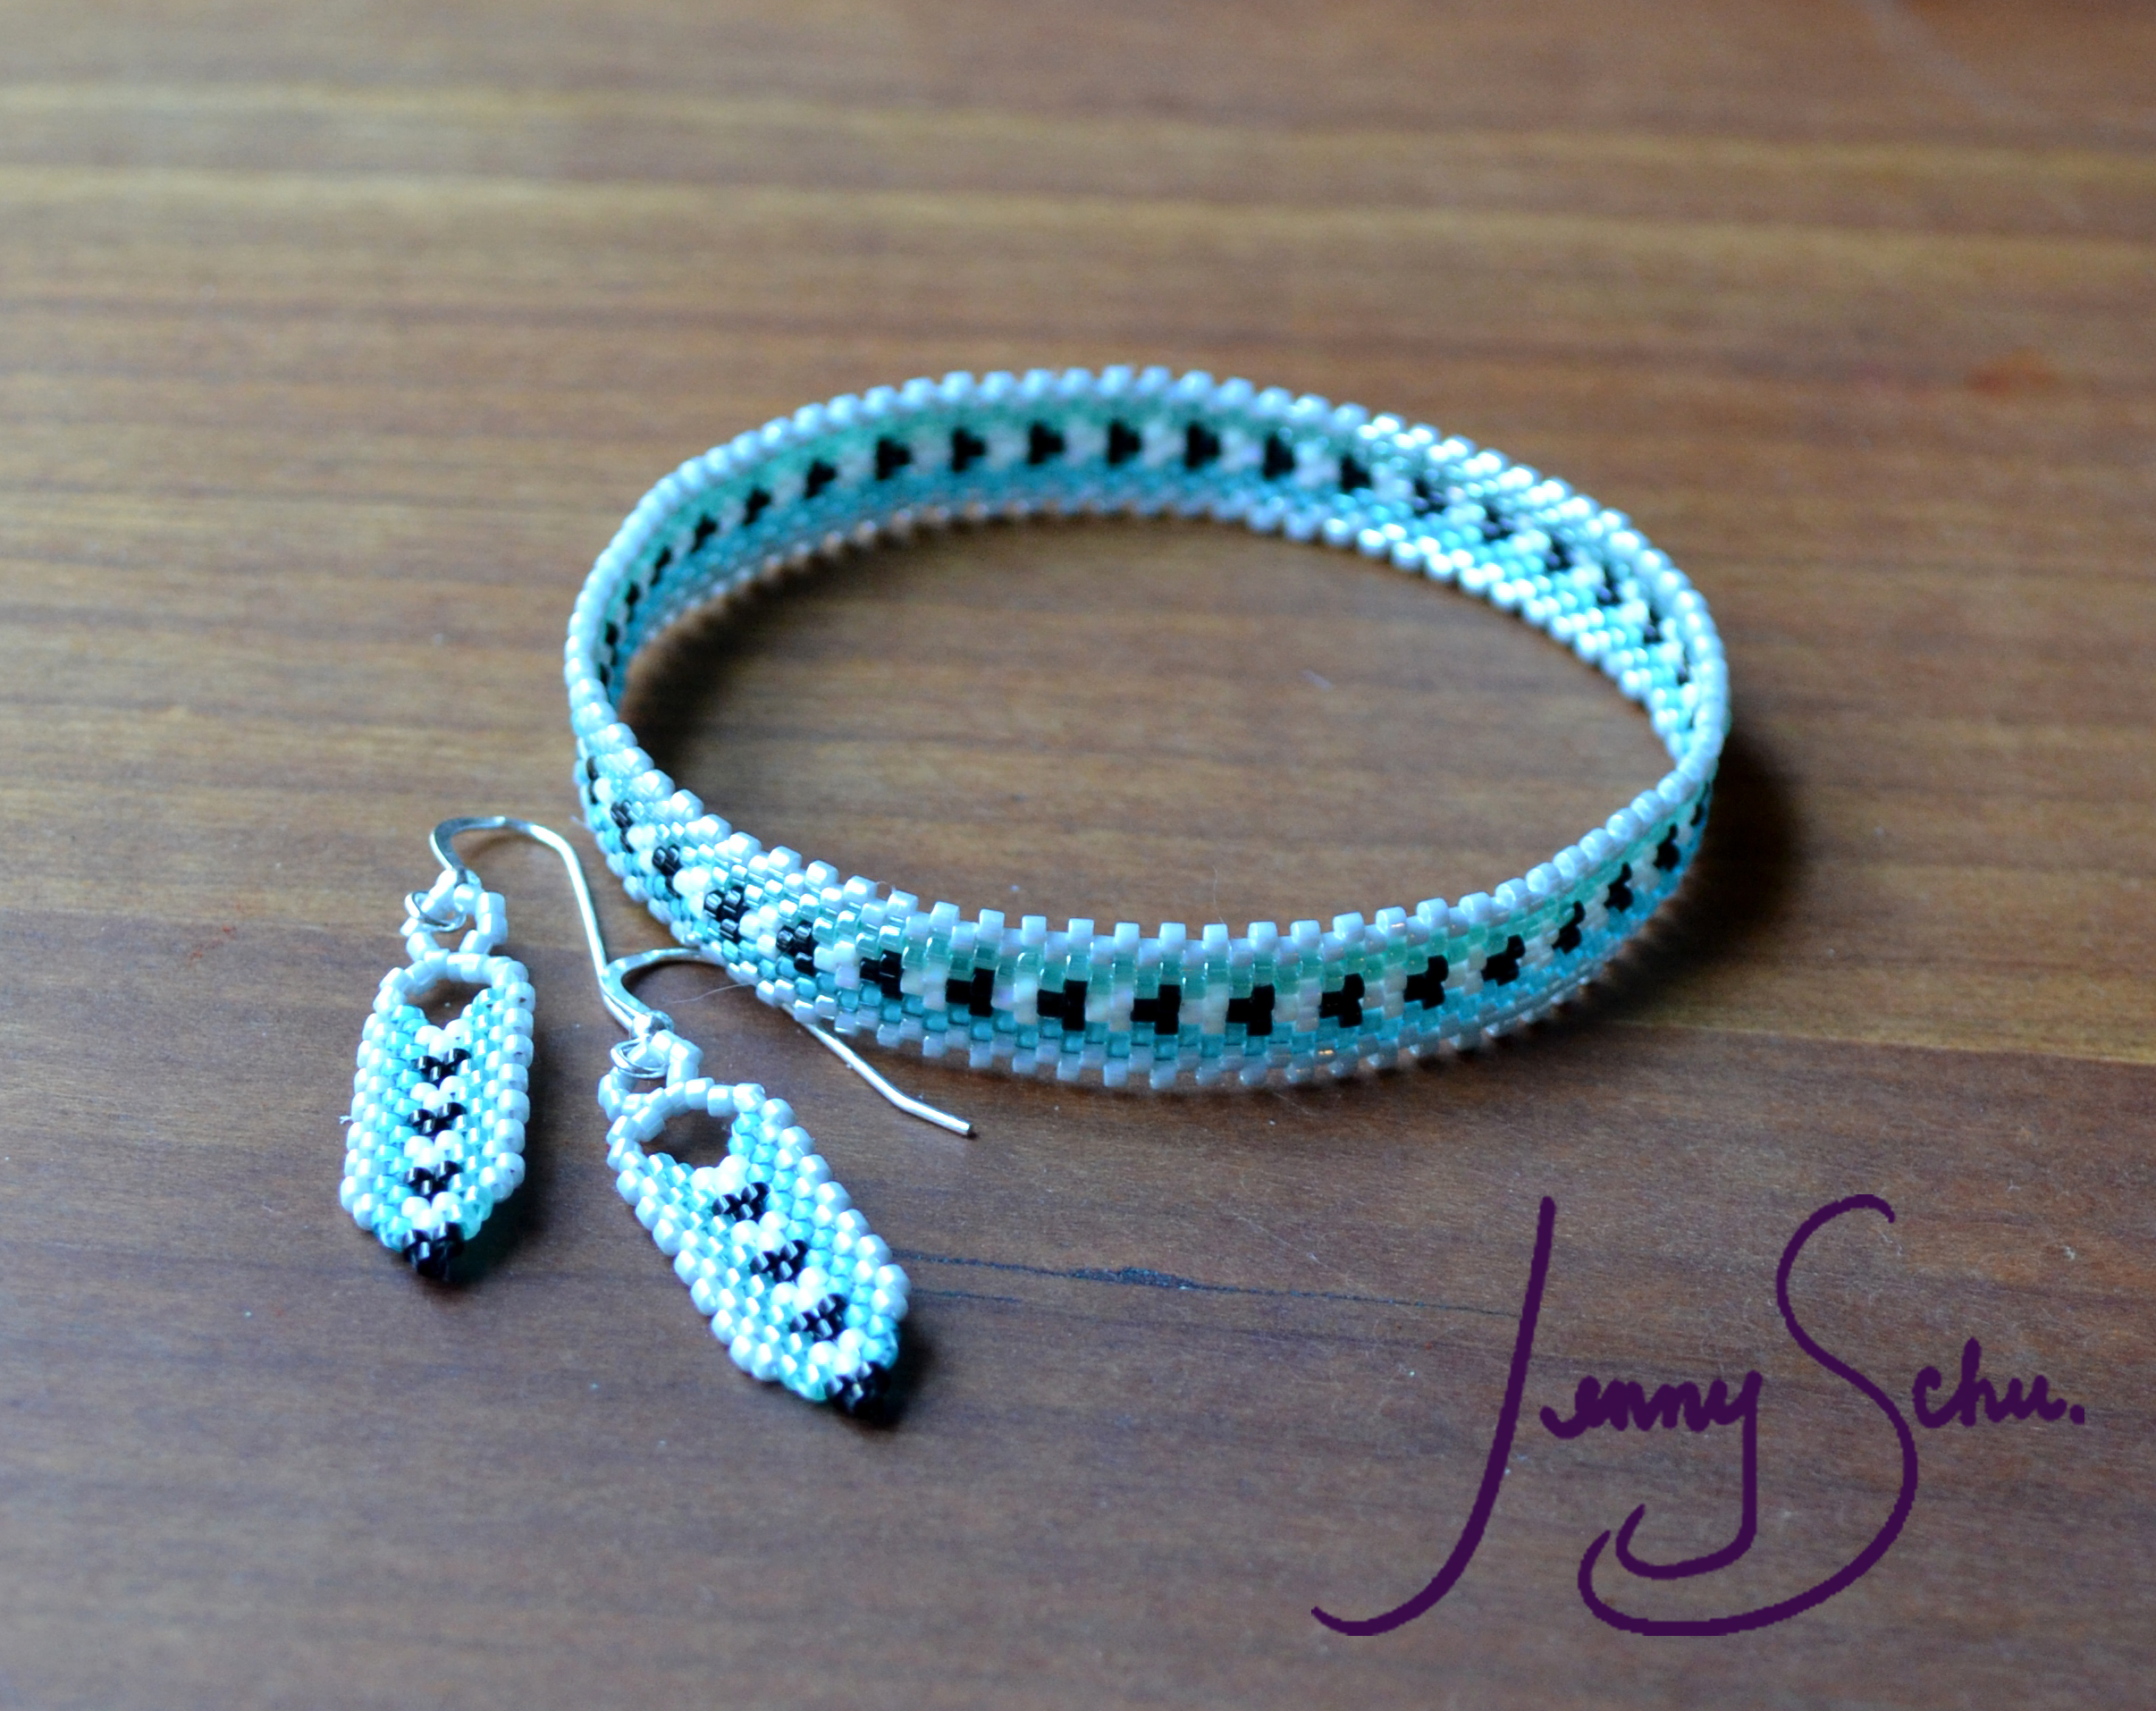 Southwest Stripe Pearl Clasp Bracelet – Jenny Schu